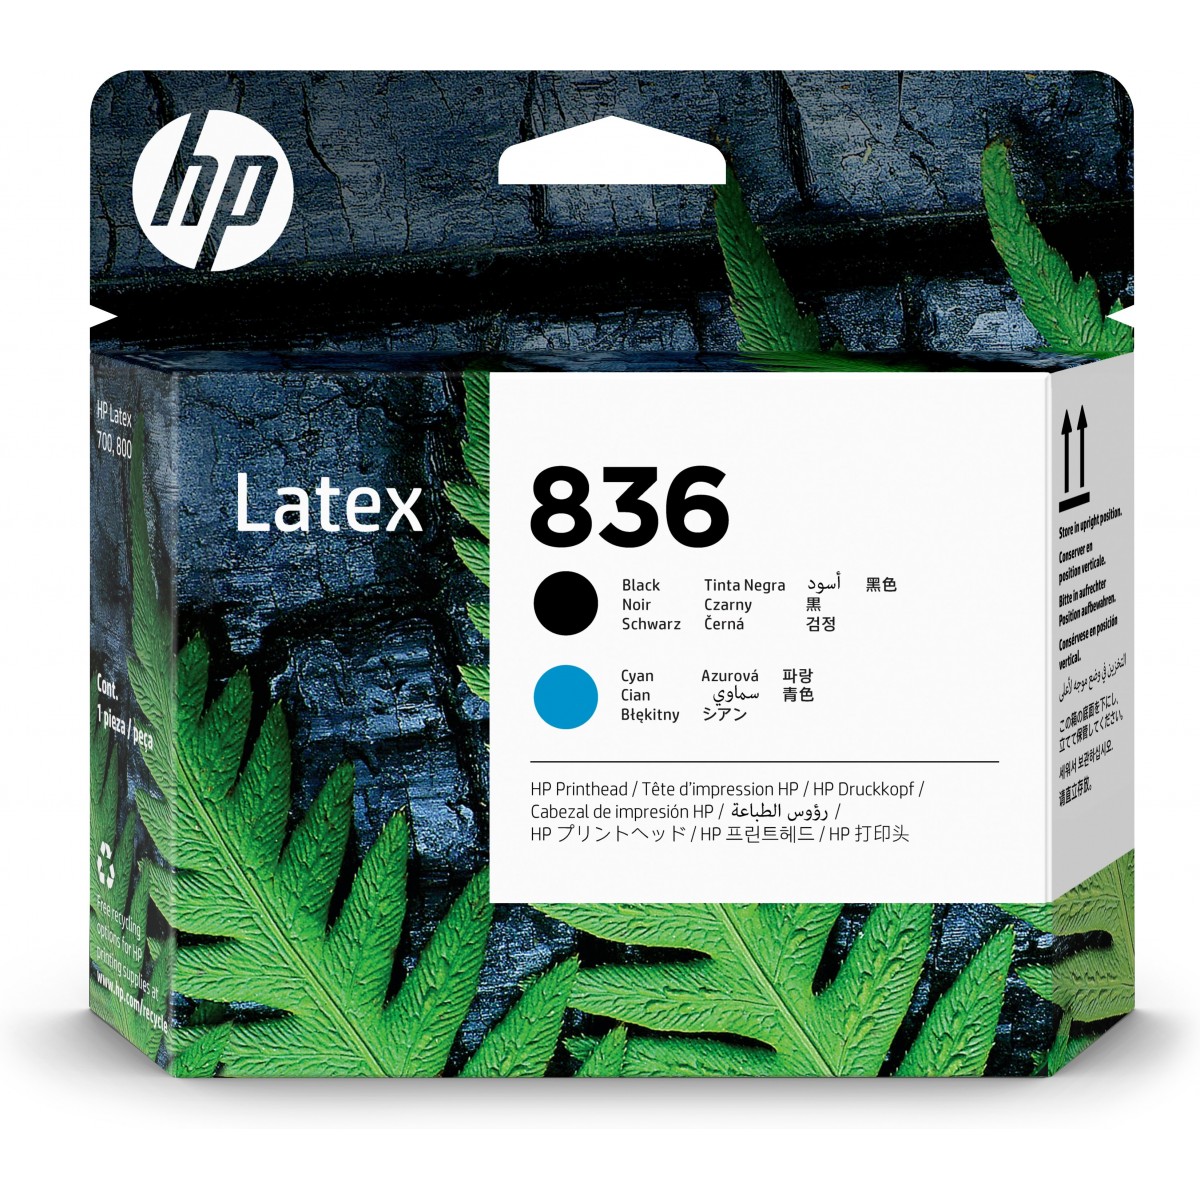 HP 836 - HP Latex 700 - 700 W - 800 - 800 W Printers - Thermal inkjet - Black - Cyan - 4UV95A - Box - 1 pc(s)